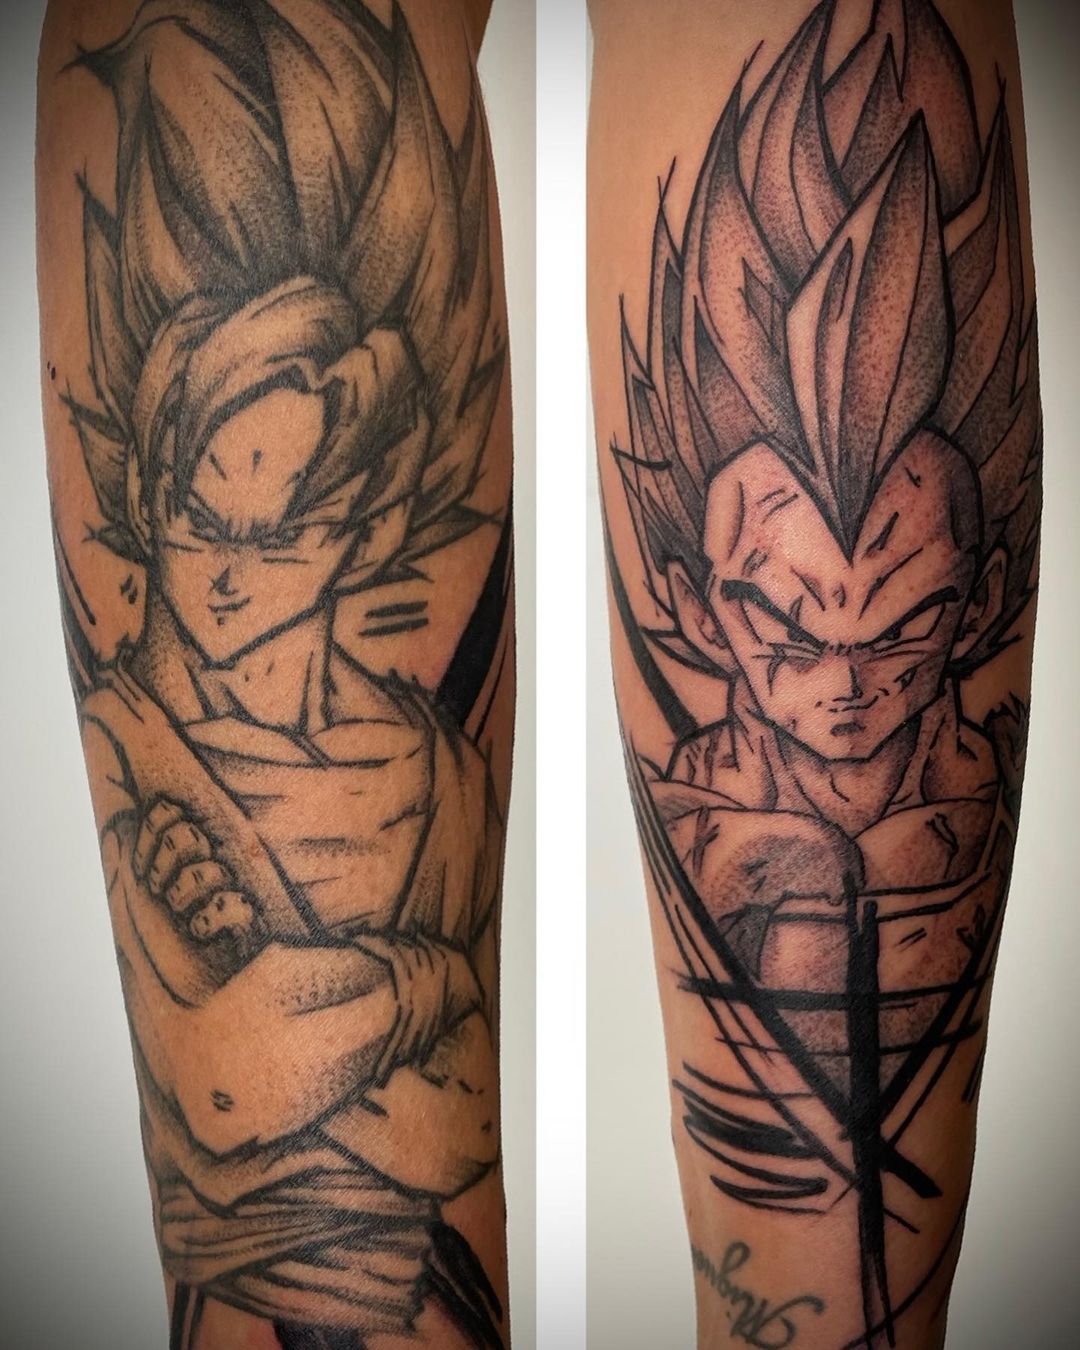 Son Goku und Vegeta  #ink #inked #tattooartist #art #tattooed #tattoo #tattoos #